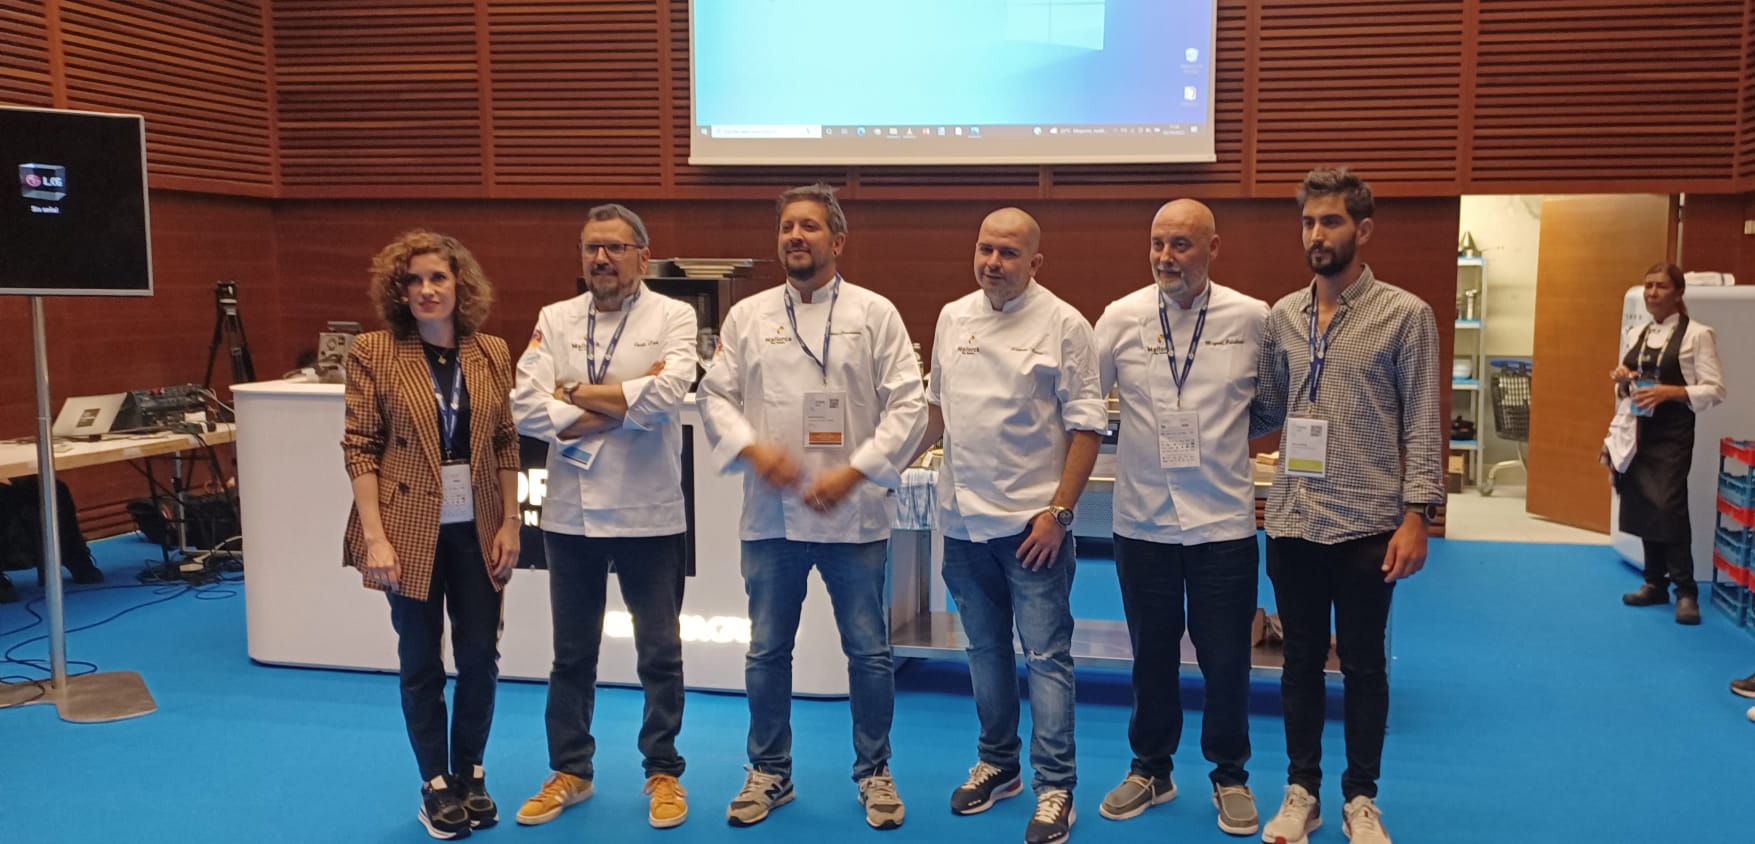 La delegació de cuiners de l'Associació de cuiners de Balears a San Sebastian Gastronomika.